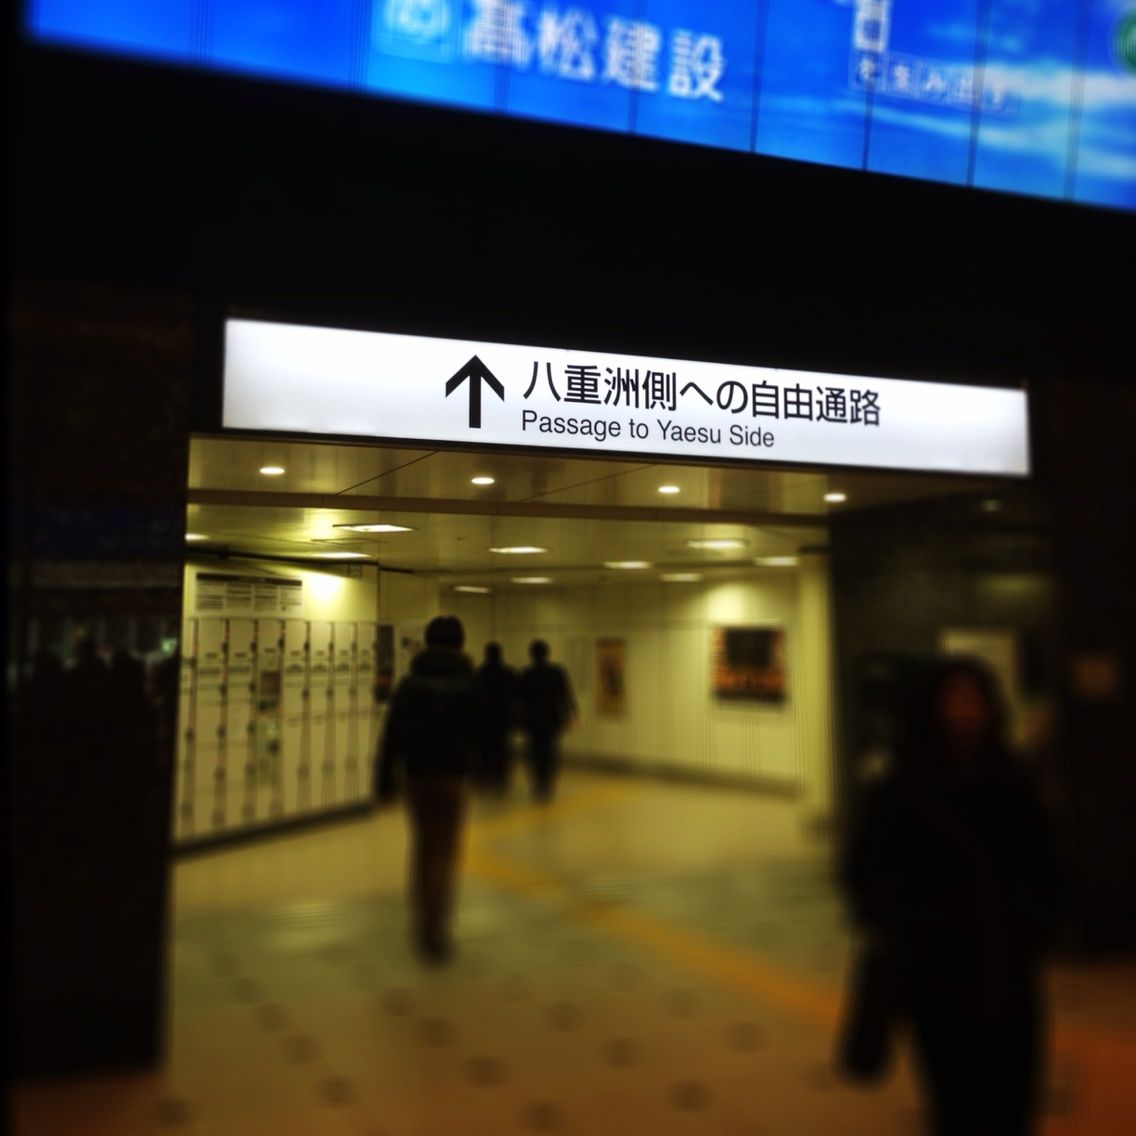 東京駅に 丸の内と八重洲をつなぐ自由通路があるって知ってた 犯人はヤス